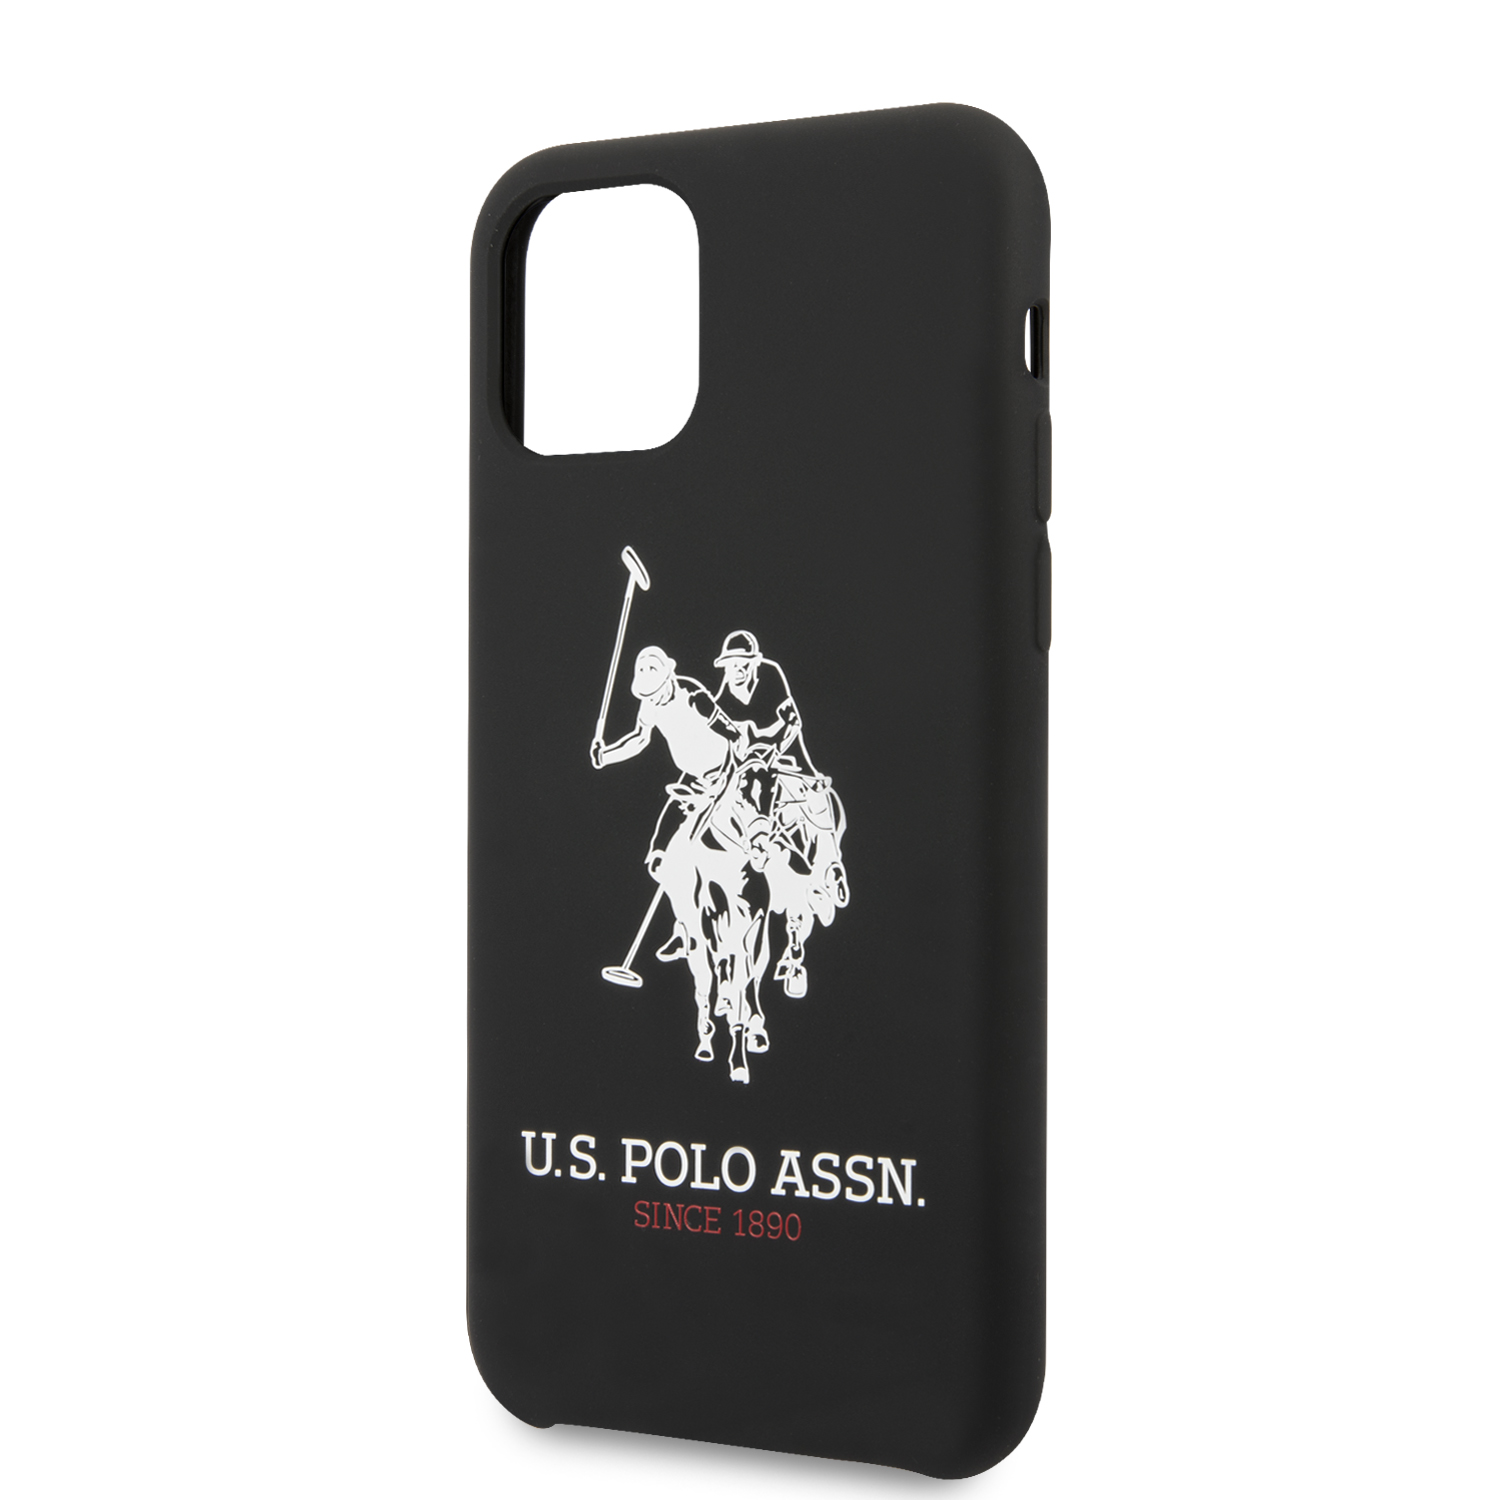 Silikonový kryt U.S. Polo Big Horse pro Apple iPhone 11, black